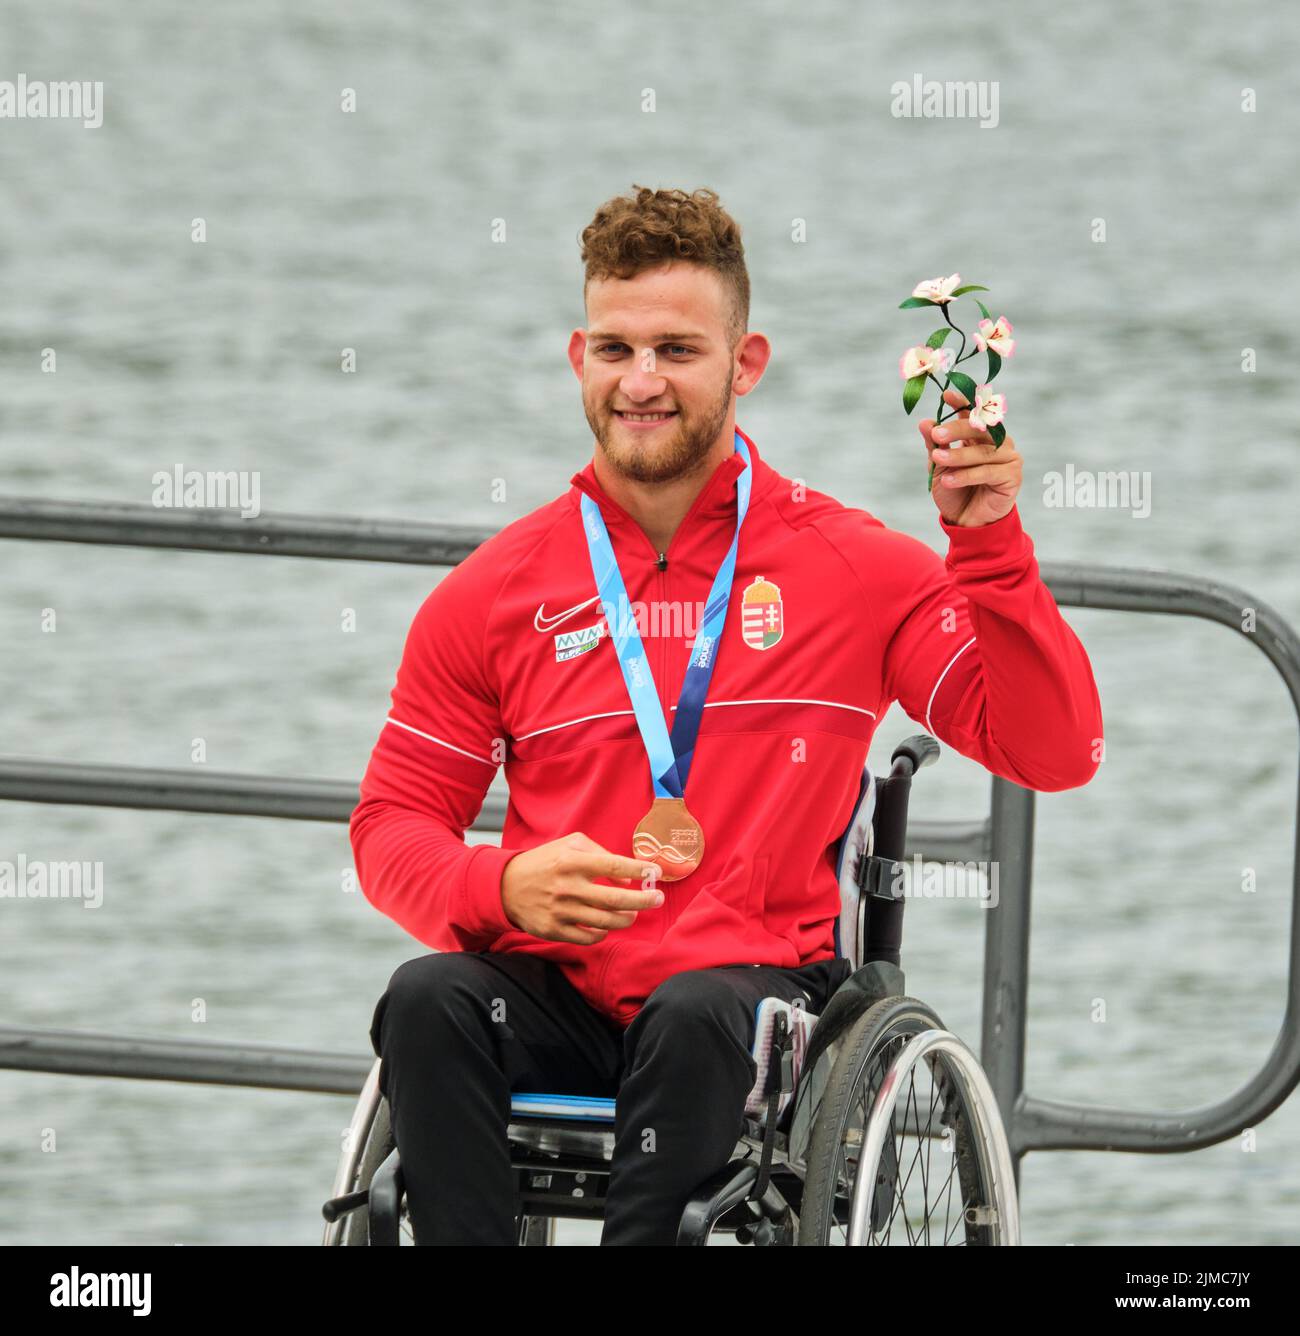 Champion du monde paracanoéiste en KL1 200m Peter Kiss, de Hongrie, reçoit sa médaille d'or au Canoe 22 au Canada Banque D'Images